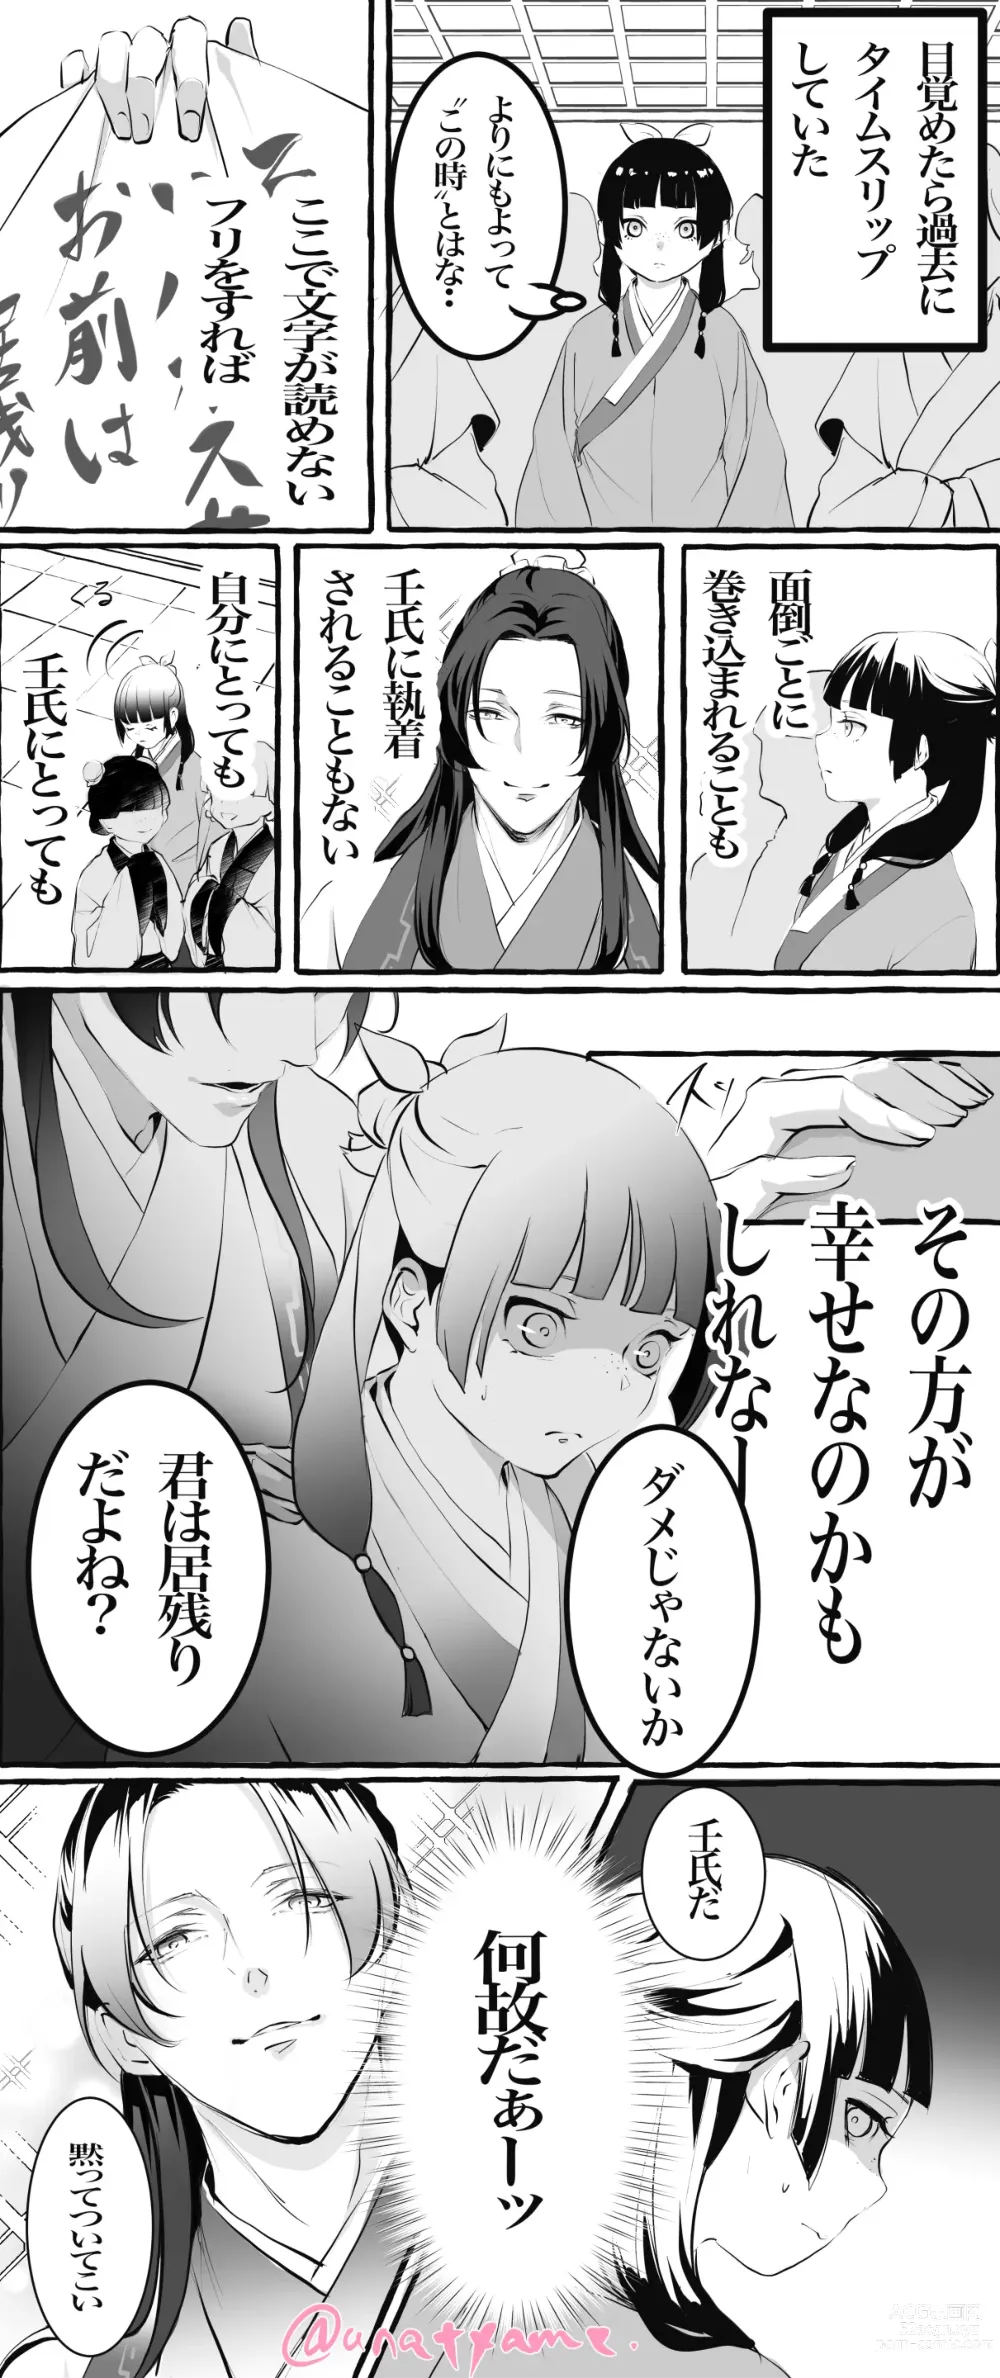 Page 16 of doujinshi Kusuriya rogu 2